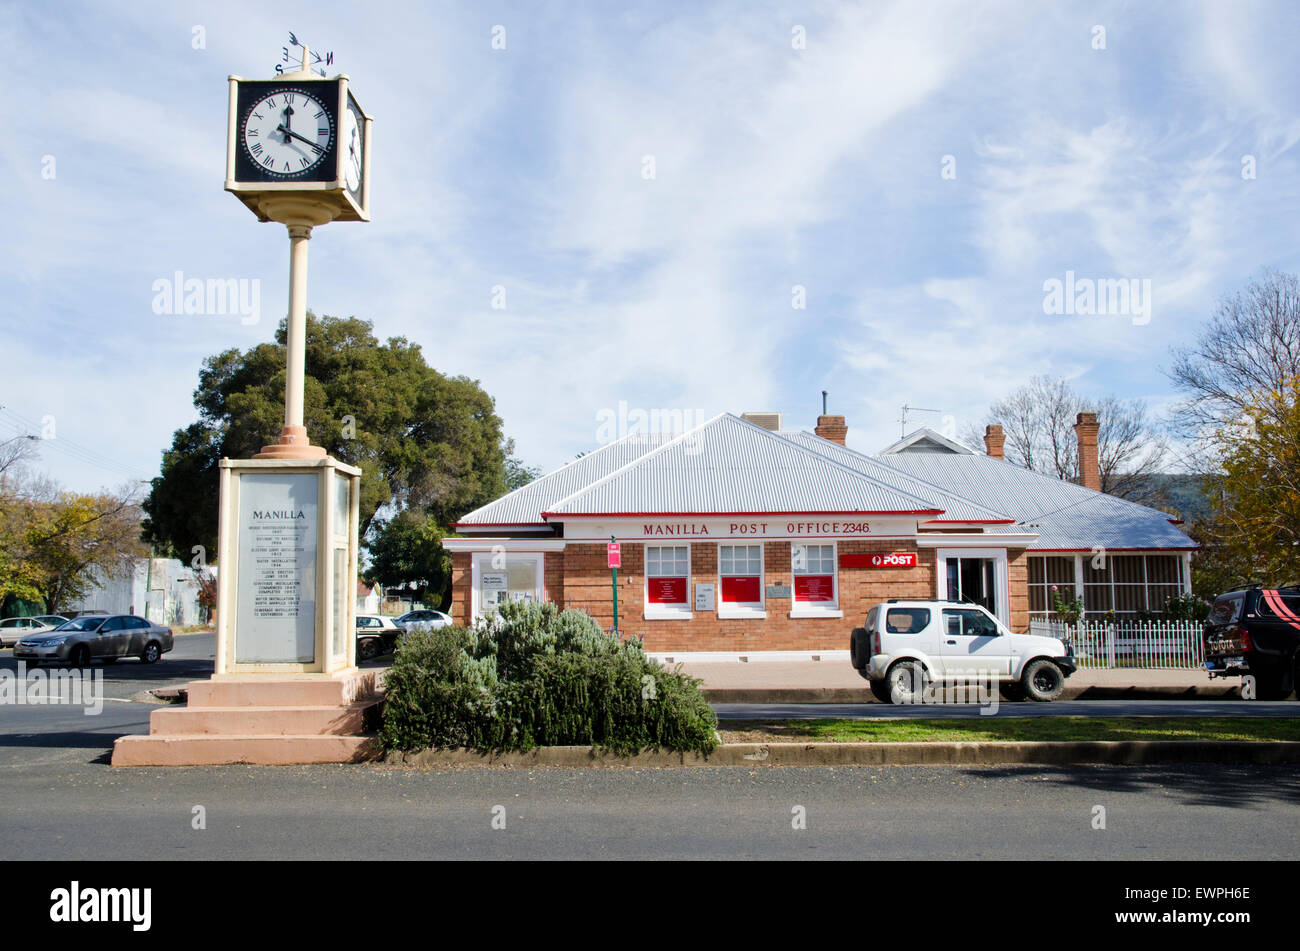 Tour de l'horloge et du bureau de poste rue Manilla Manilla NSW Australie Banque D'Images